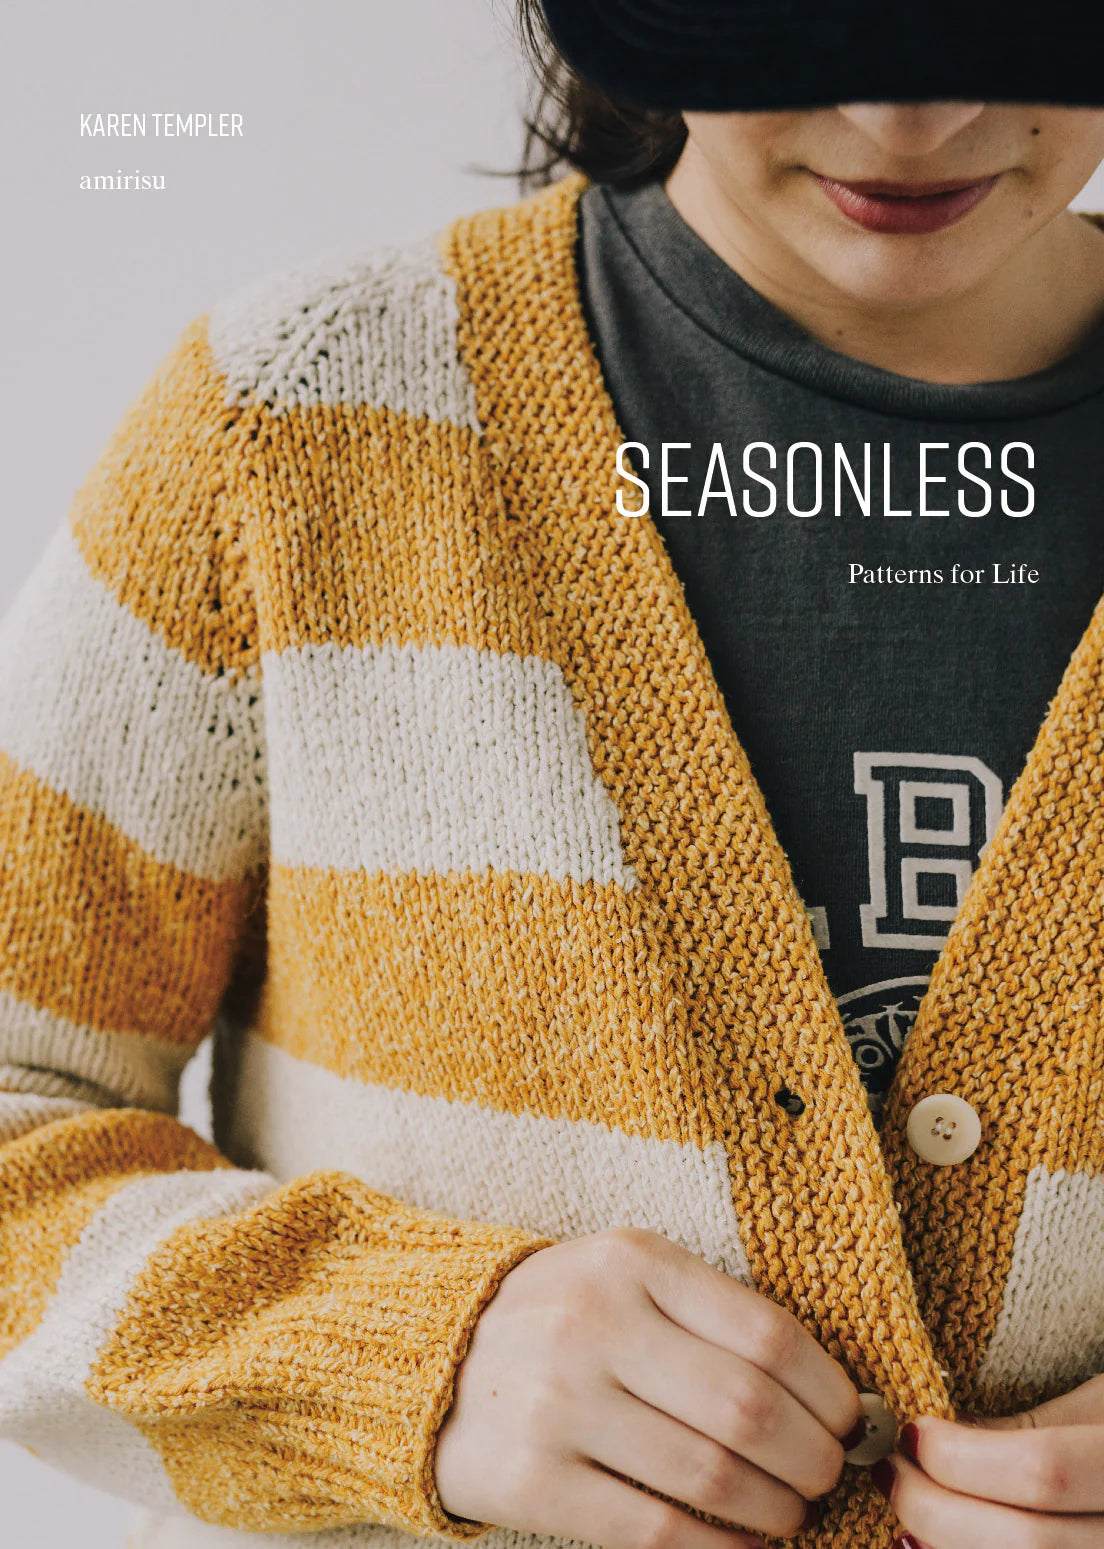 Seasonless - Patterns for Life by Amirisu Amirisu